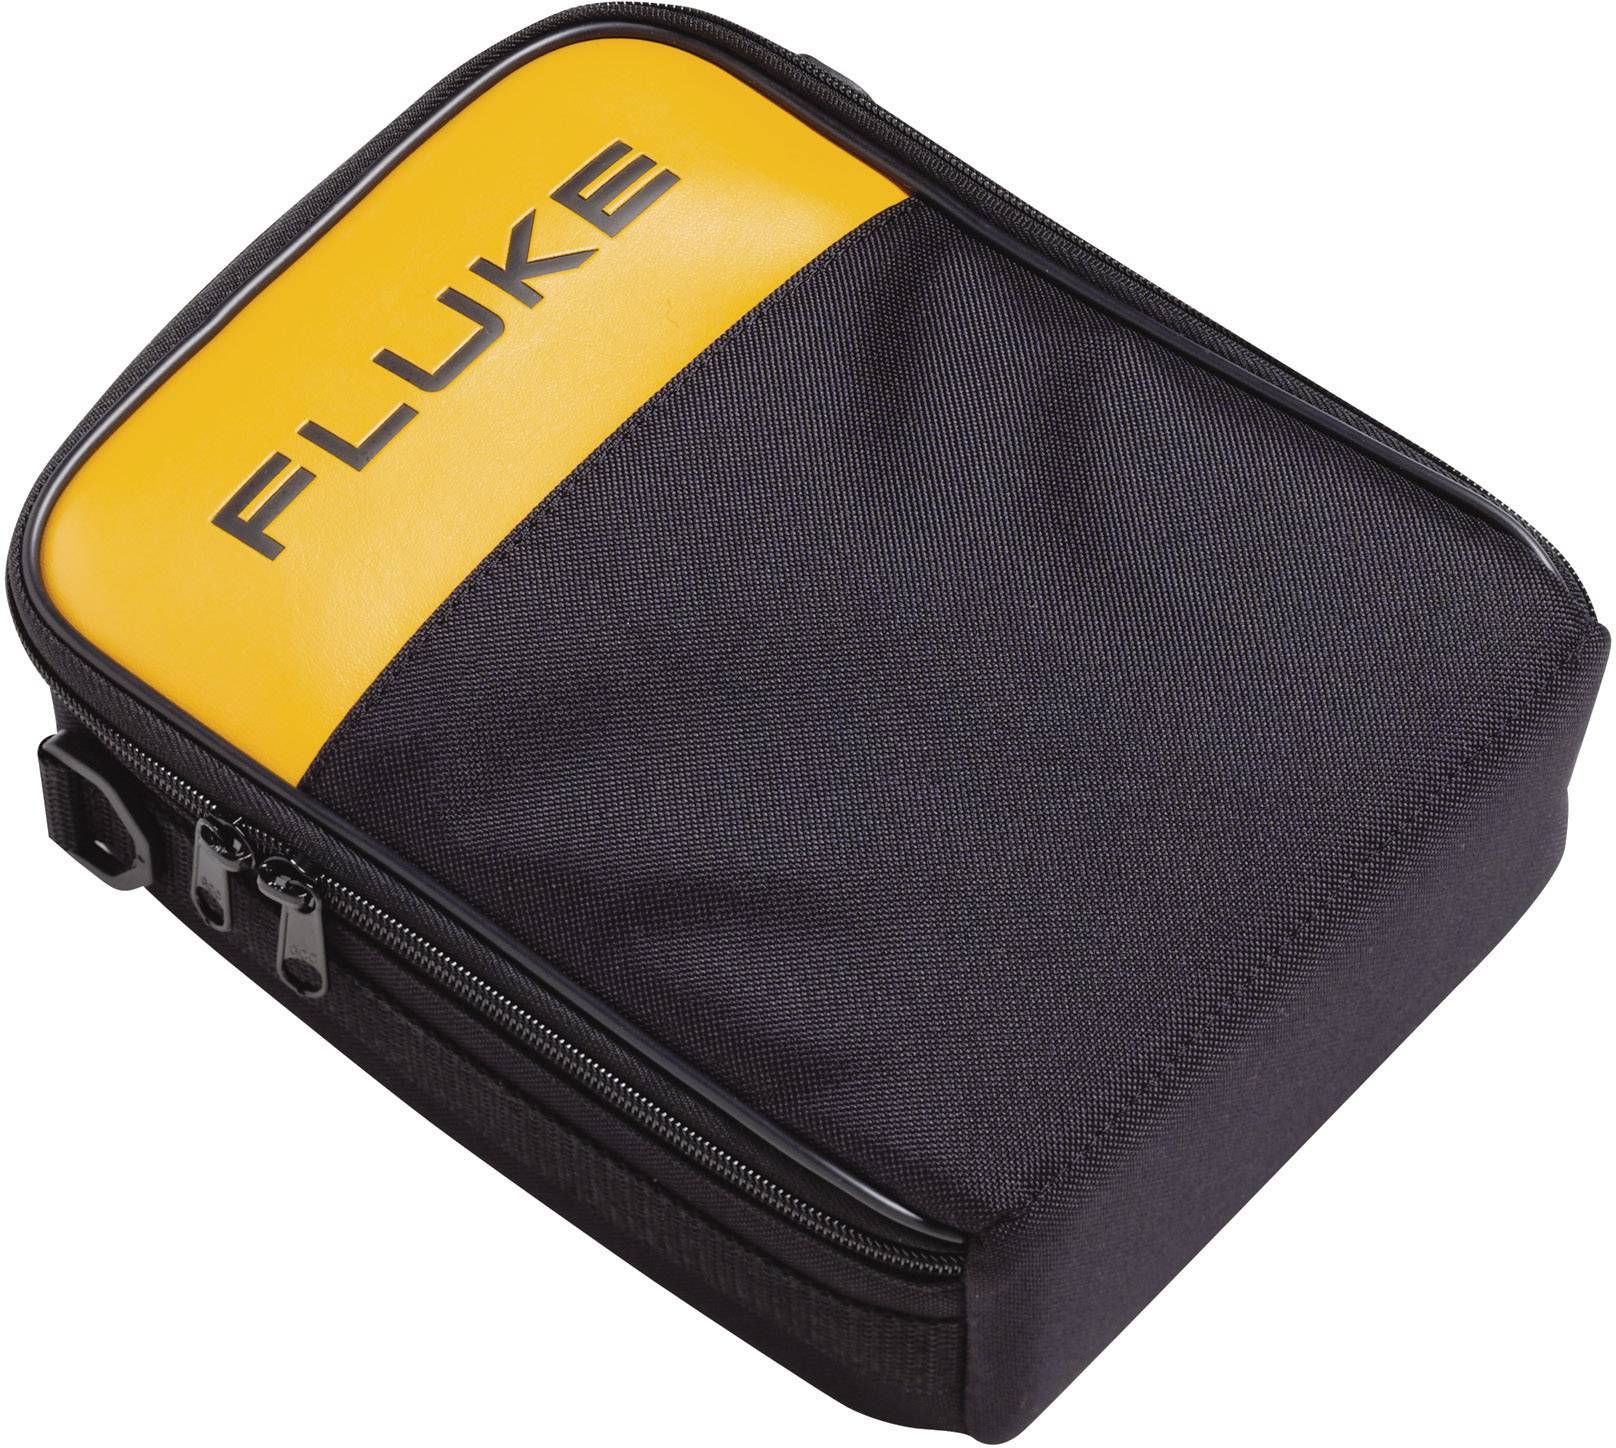 FLUKE C280 Messgeräte-Tasche, Etui Passend für Fluke 280-Serie und Geräte mit ähnlichen Abmessunge